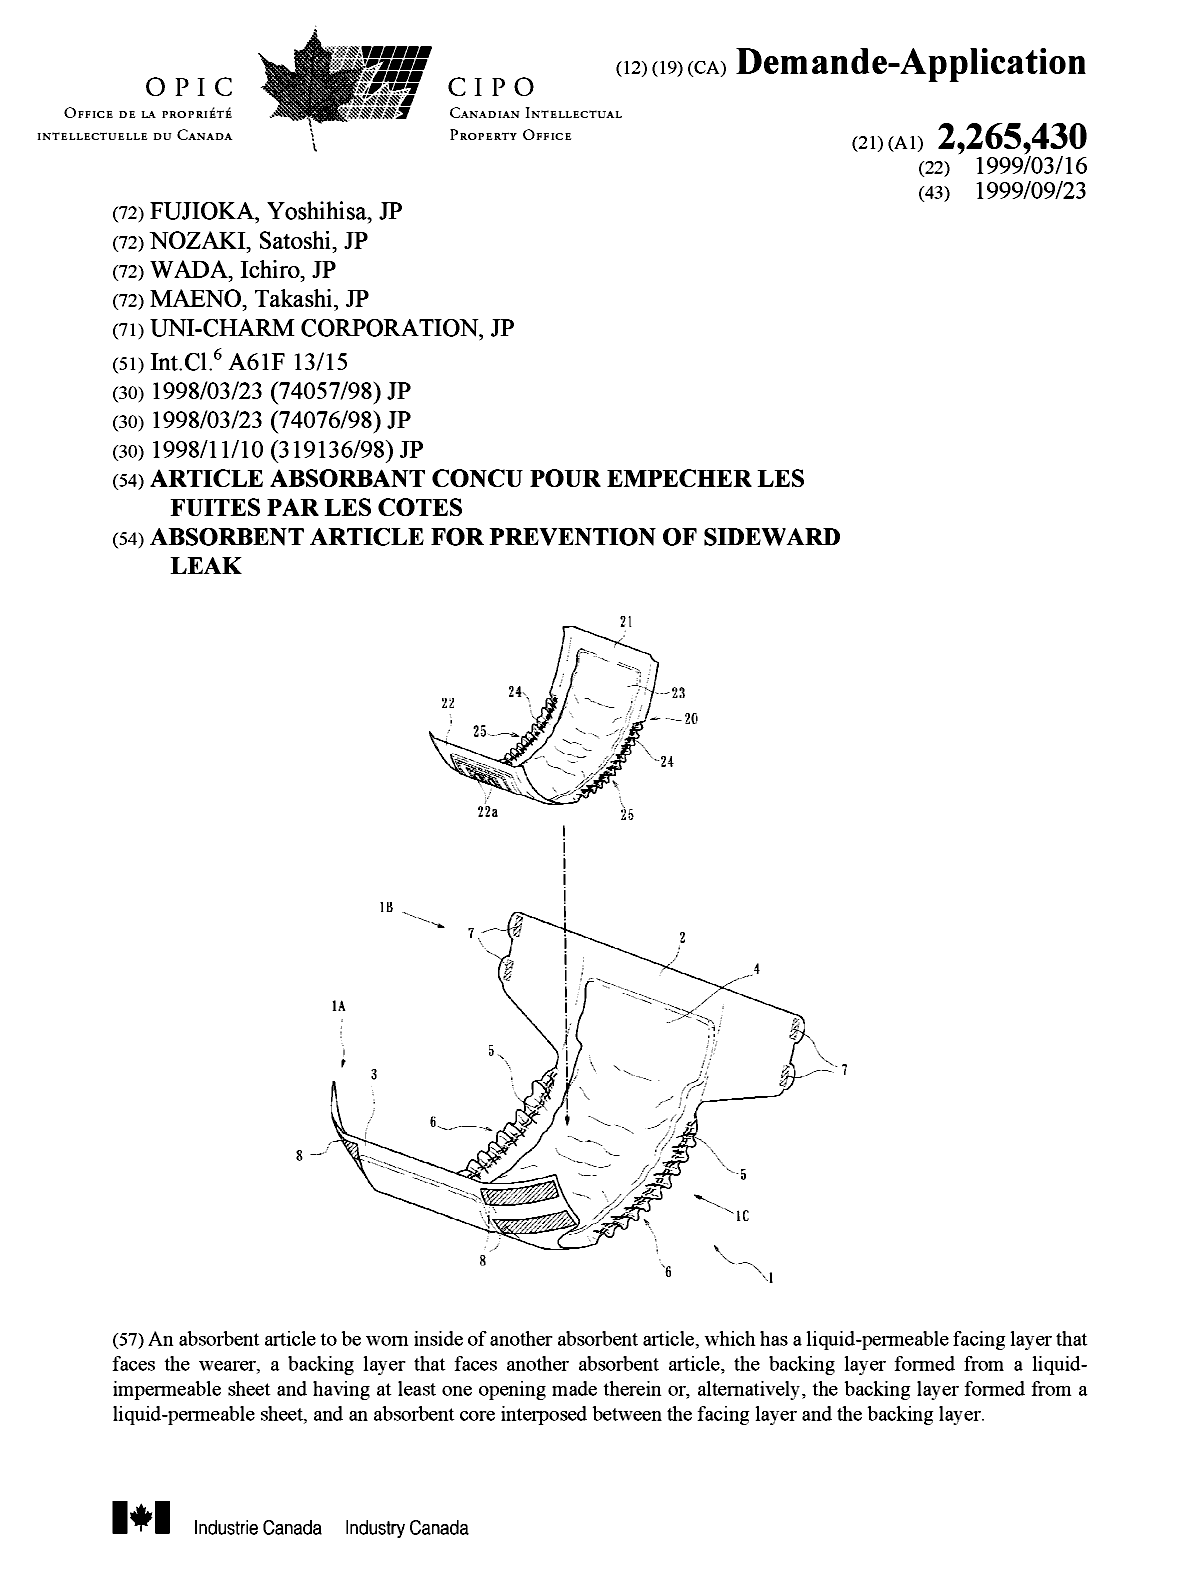 Document de brevet canadien 2265430. Page couverture 19990910. Image 1 de 1